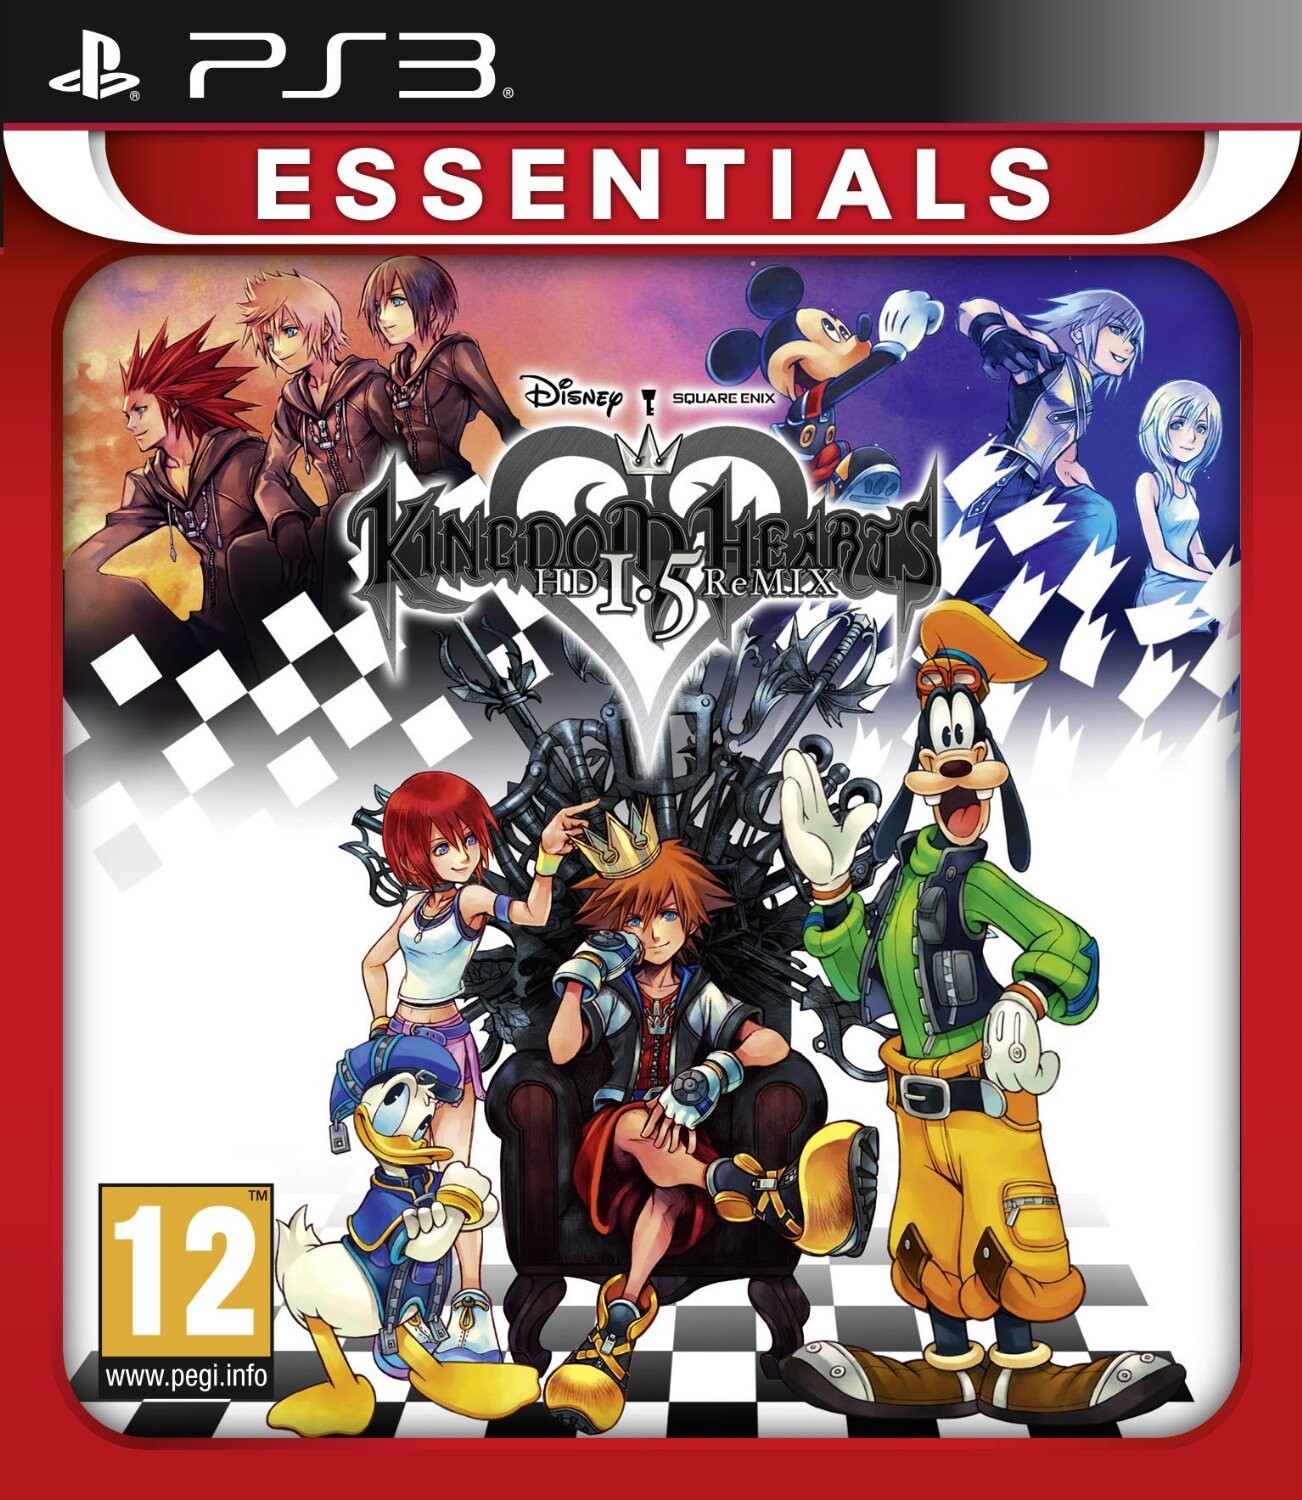 Kingdom Hearts 1.5 Remix ps3 → Køb billigt her -